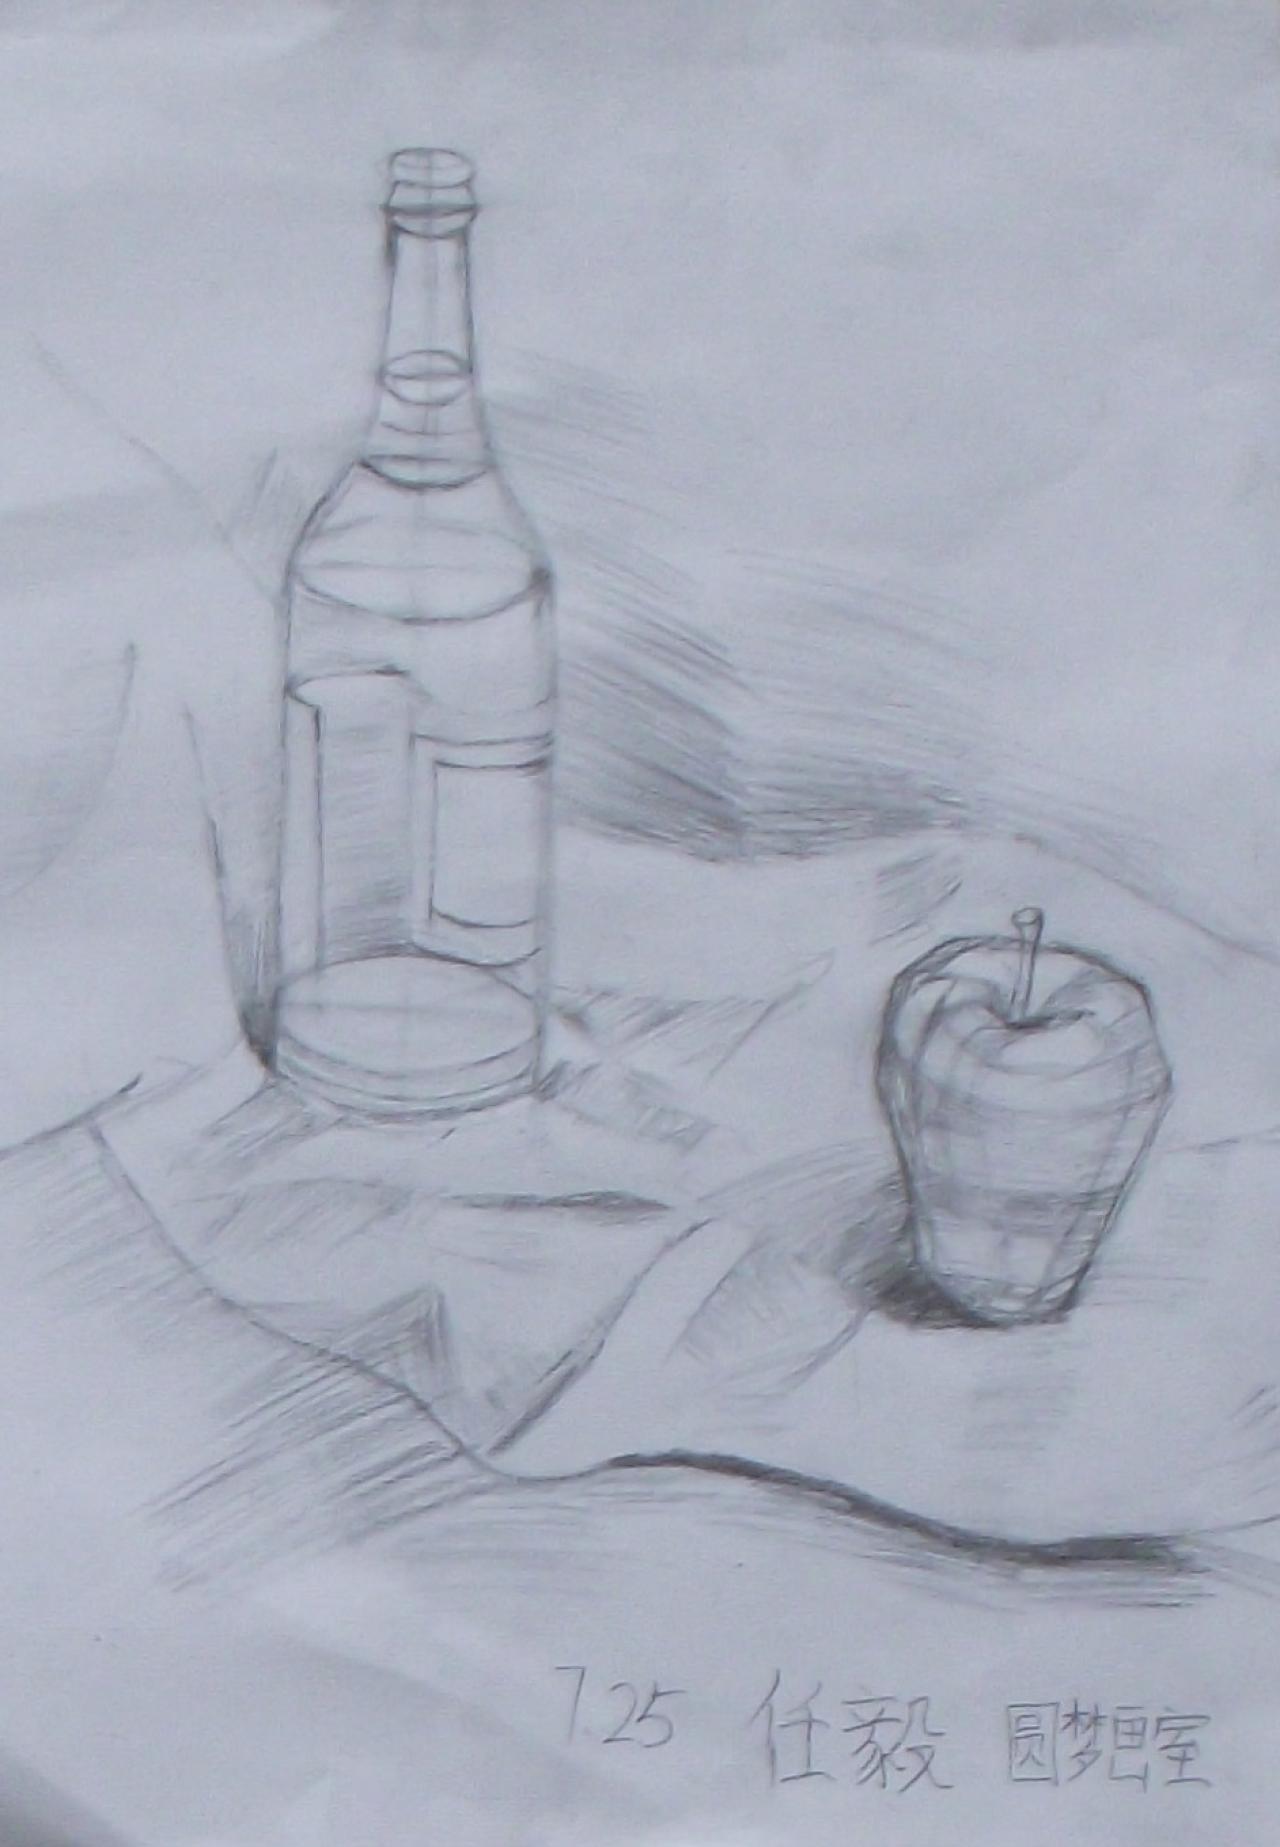 酒瓶和苹果结构素描 任毅画